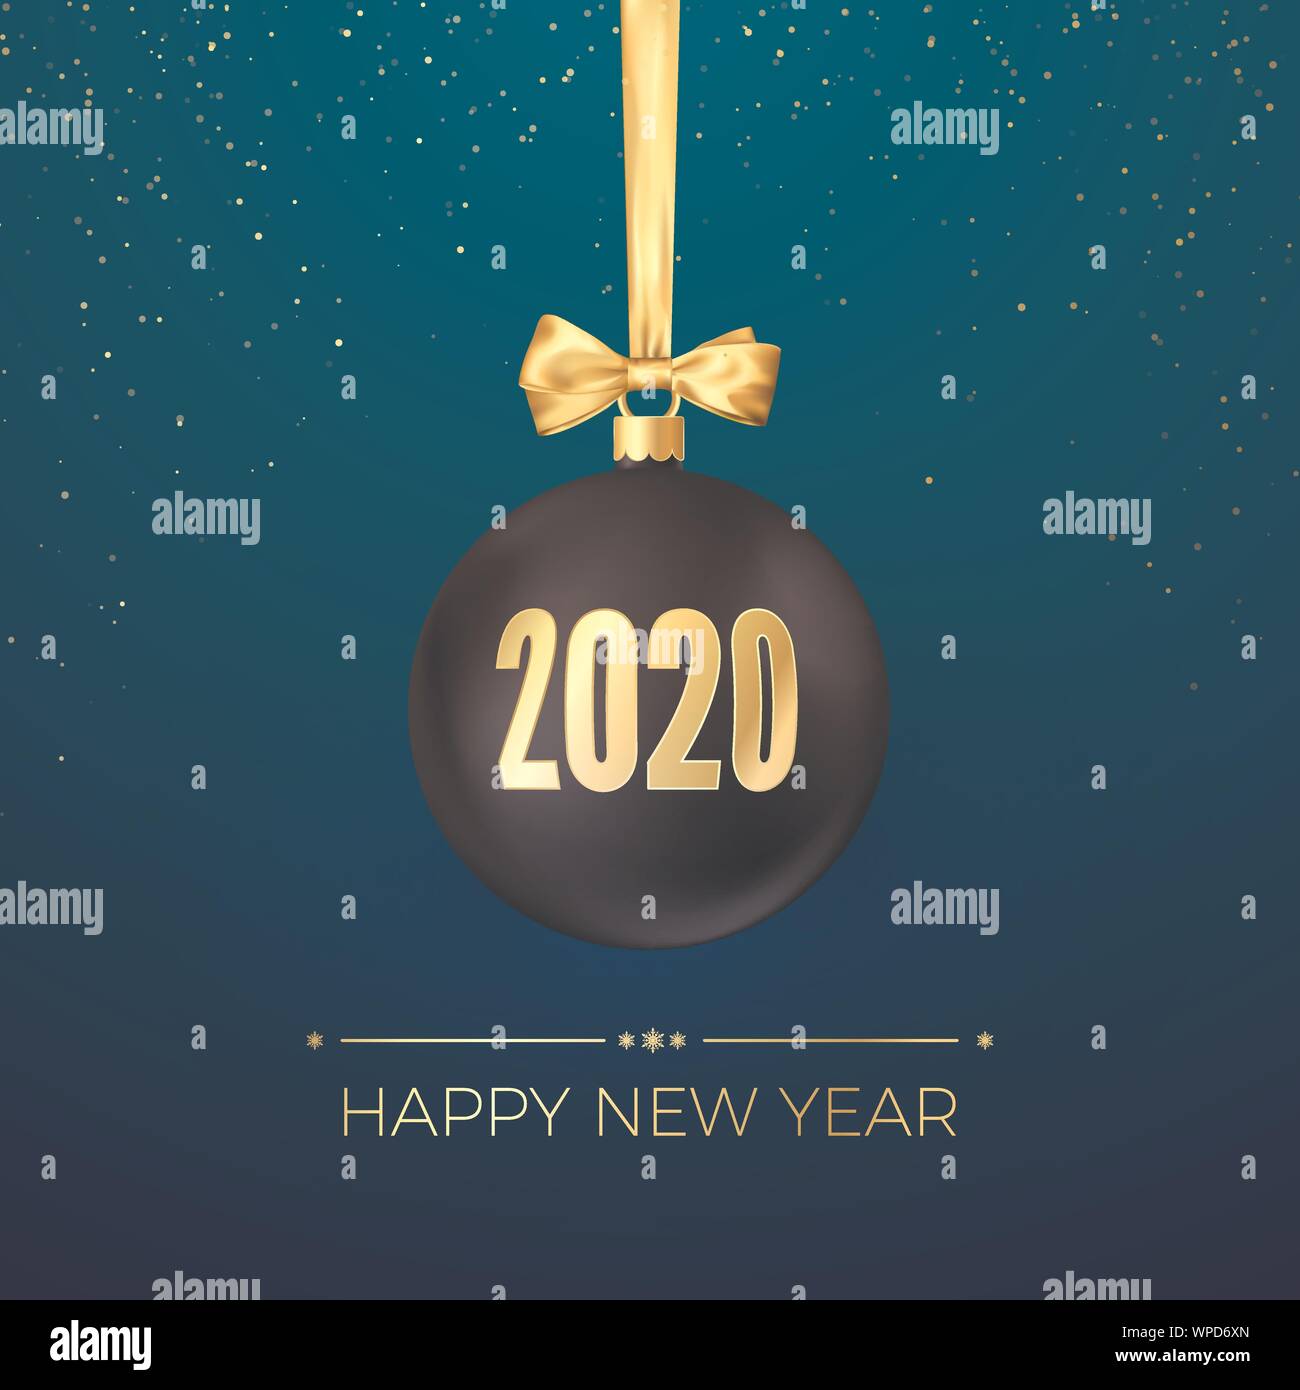 Felice anno nuovo 2020. Biglietto di auguri con il nero palla di Natale con nastro d'oro e i numeri d'oro 2020 su di essi. Nuovo anno e decorazione di Natale eleme Illustrazione Vettoriale